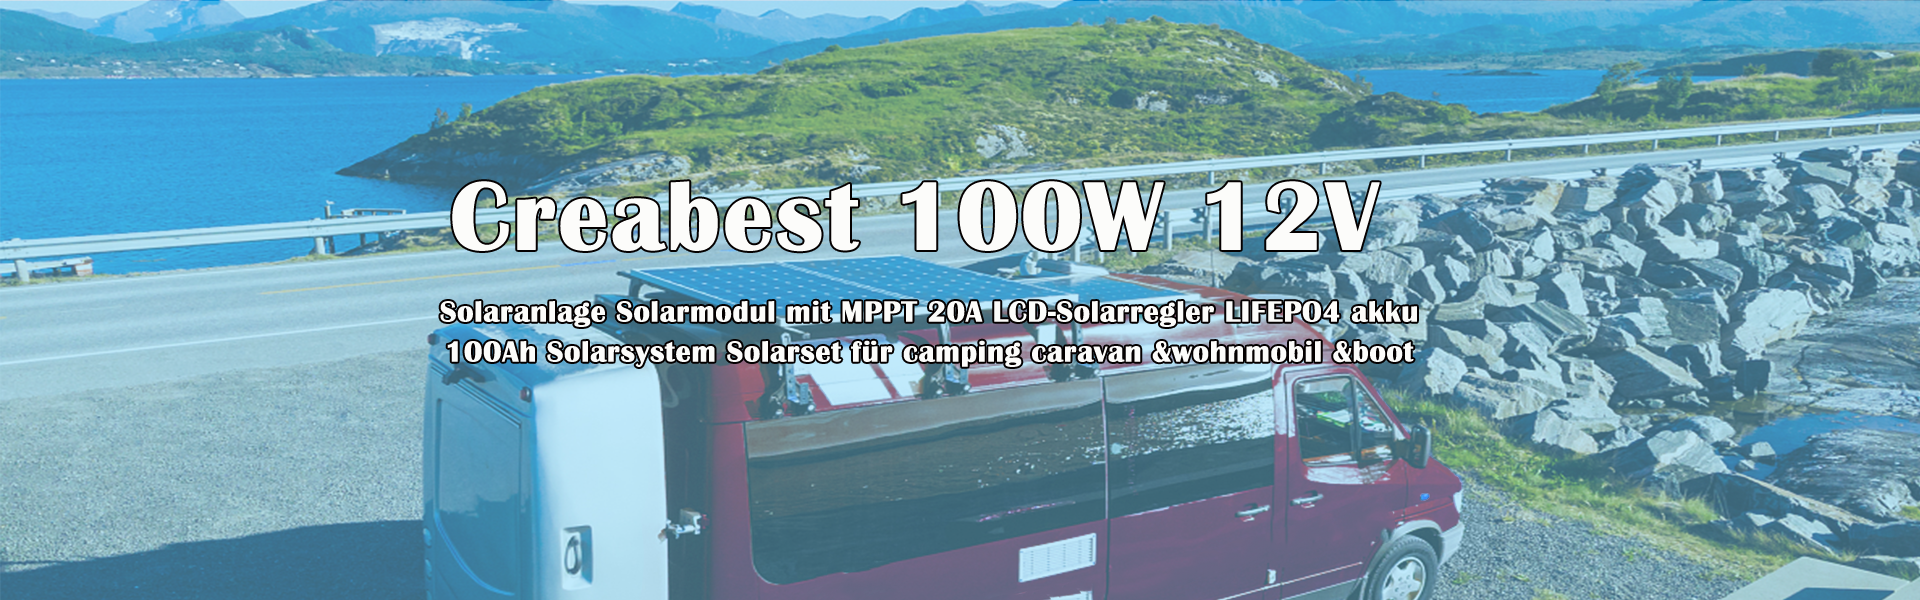 BSA Solarbatterie 100ah 12v Caravan Wohnmobil Wohnwagen Boot